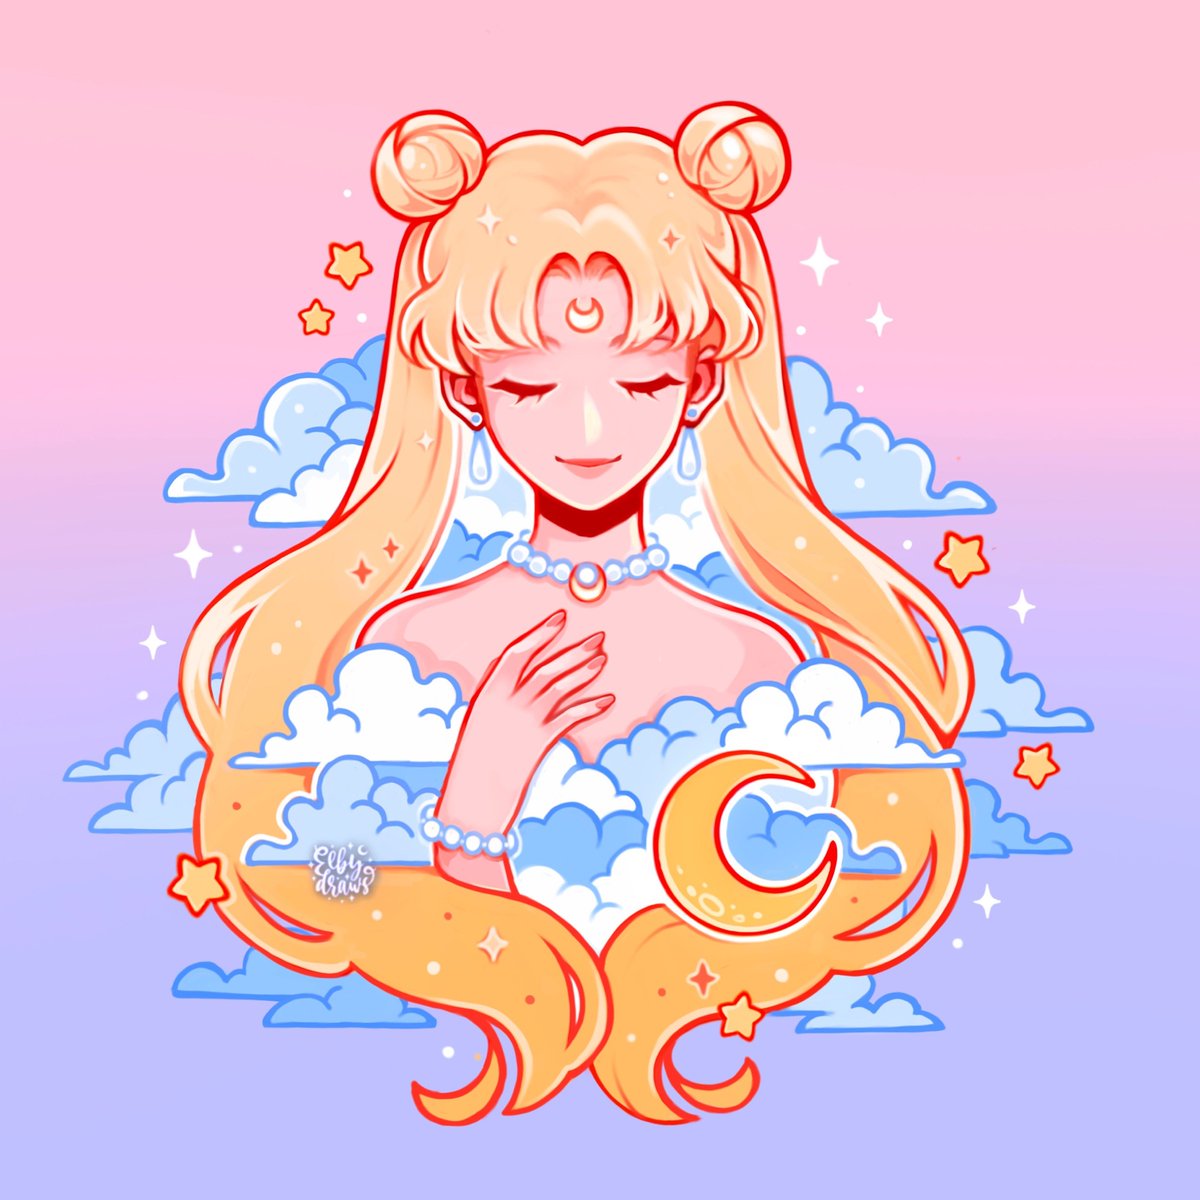 Sailor Moon 🌙

#moon #sailormoonfanart #sailormoon #sailorscouts #sailorguardians #usagitsukino #anime90s #princessserenity #girlpower #artistsupport